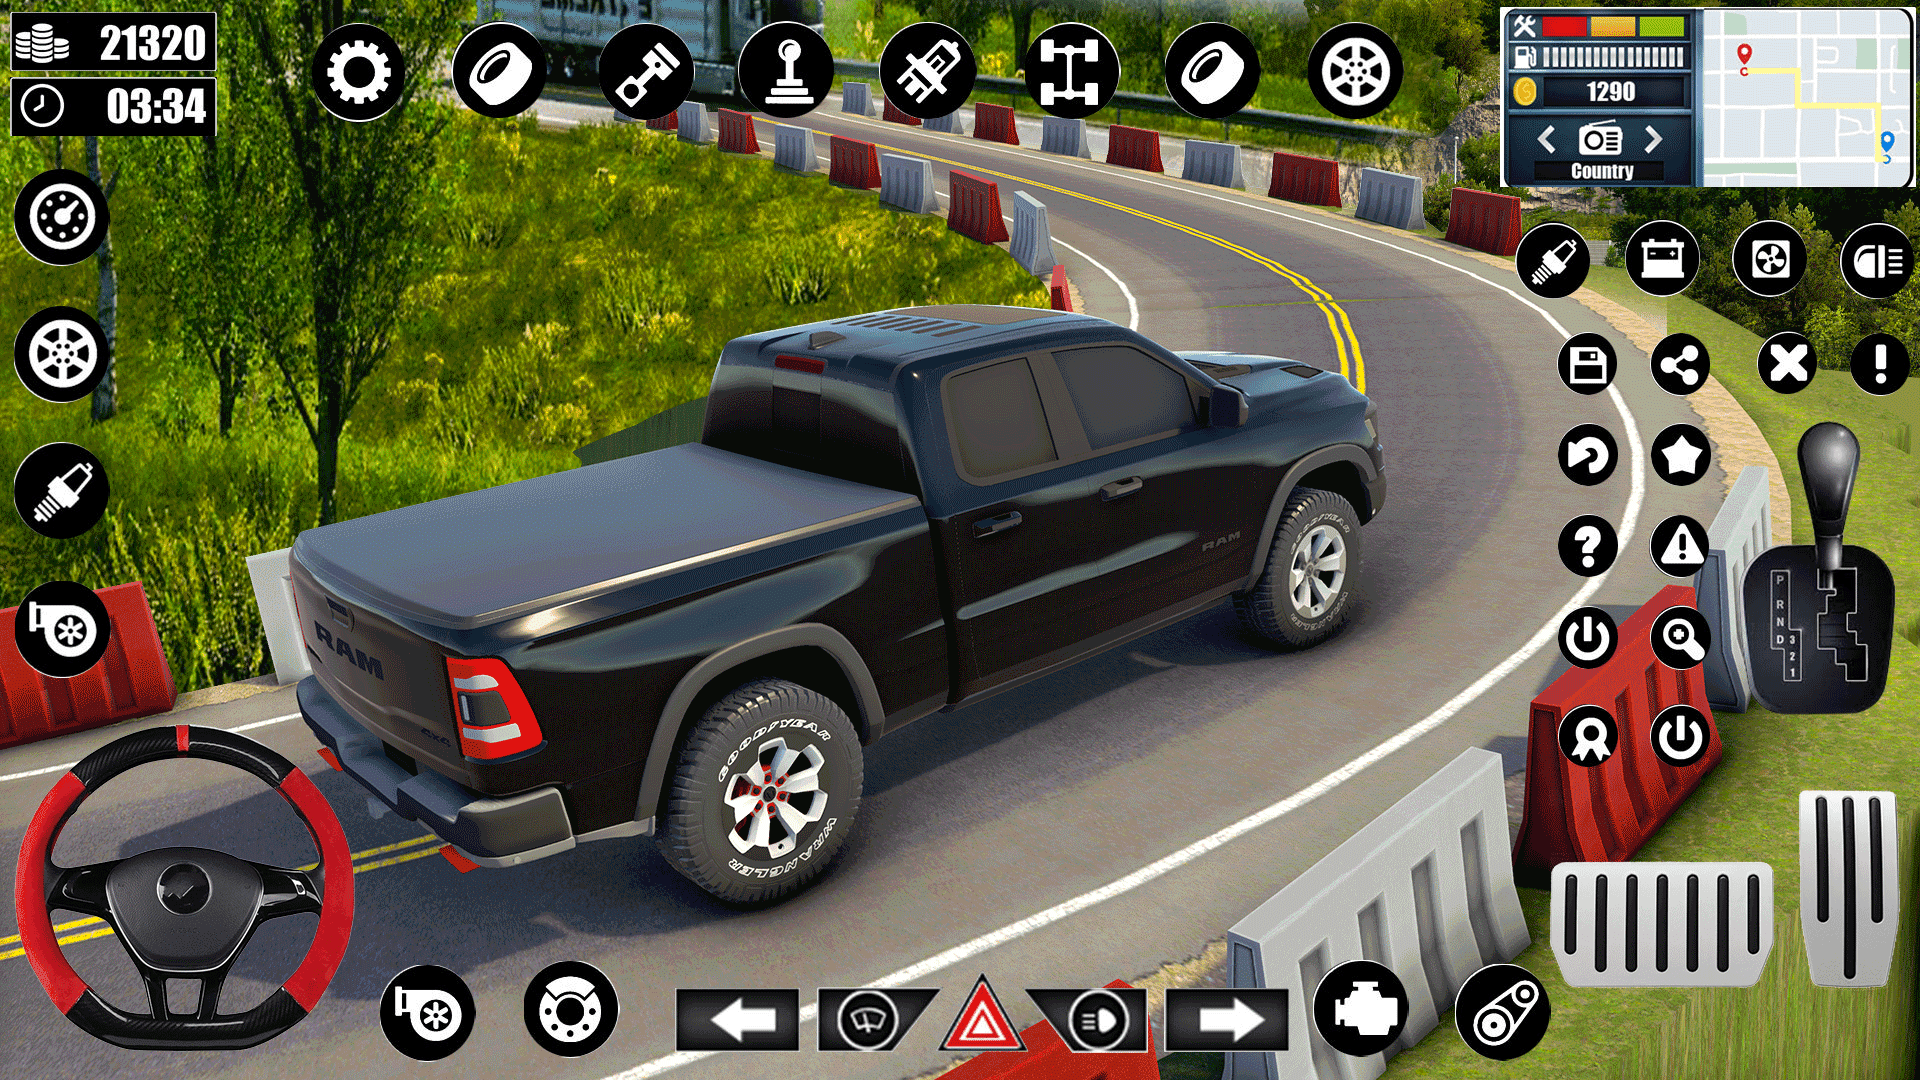 Screenshot 1 of Car Driving Simulator Games 3D 0.1